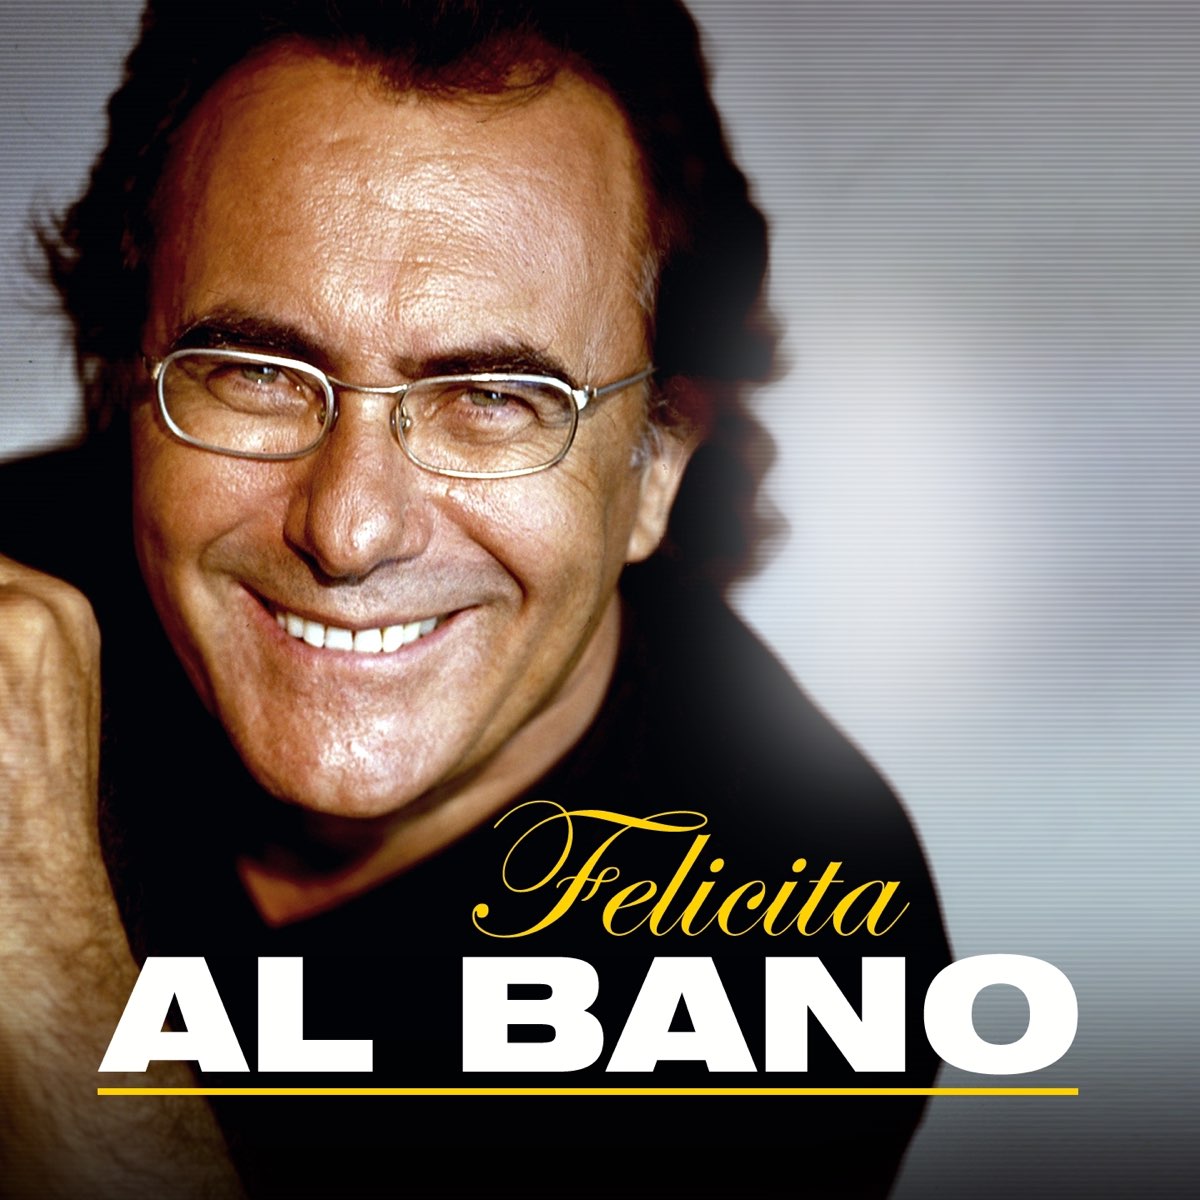 Аль бано mp3. Аль Бано. Итальянский певец Альбано. Аль Бано фото. Al bano poster.